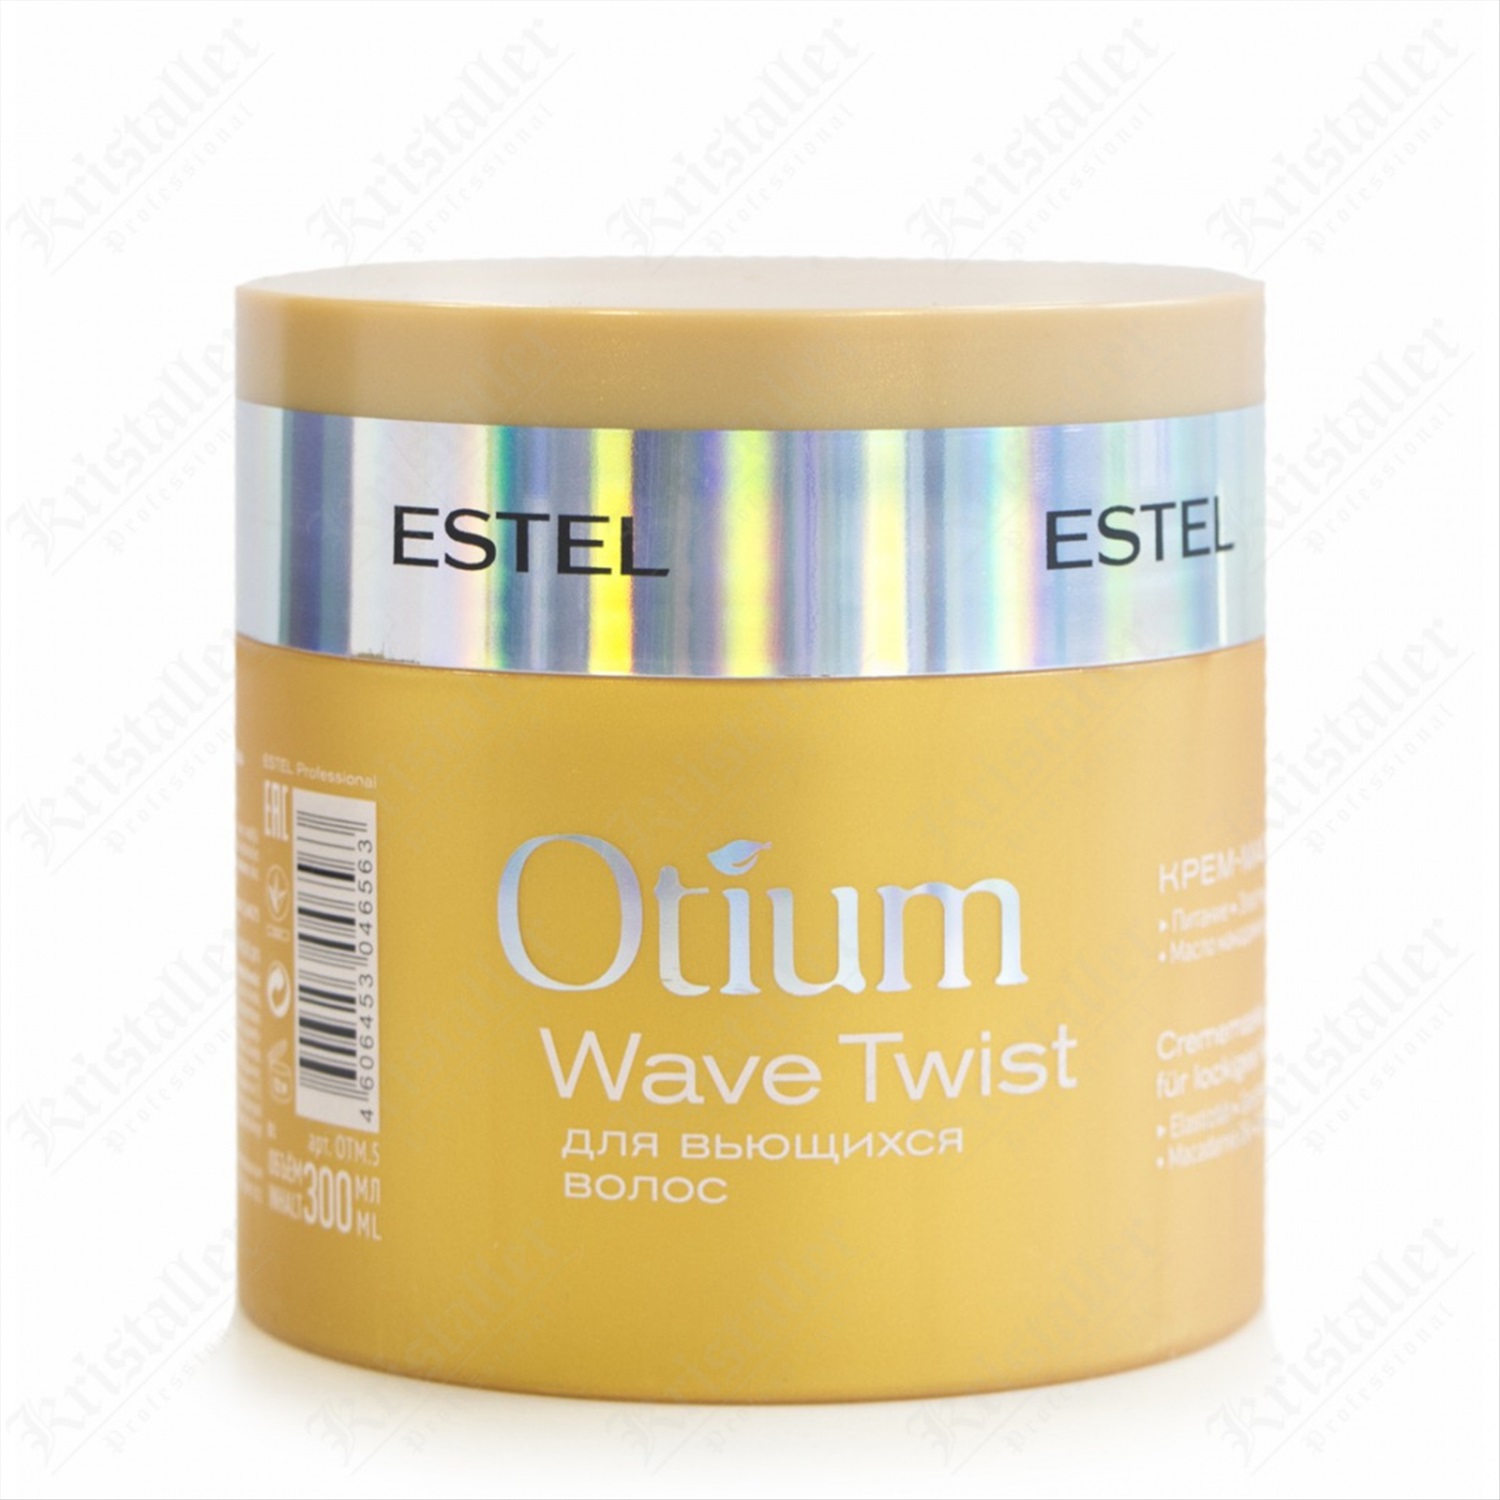 Otium маска для волос. Estel Otium Wave Twist крем-маска для вьющихся волос 300 мл. Estel Otium маска для волос. Маски Эстель отиум 300 мл. Маска для волос Эстель отиум.